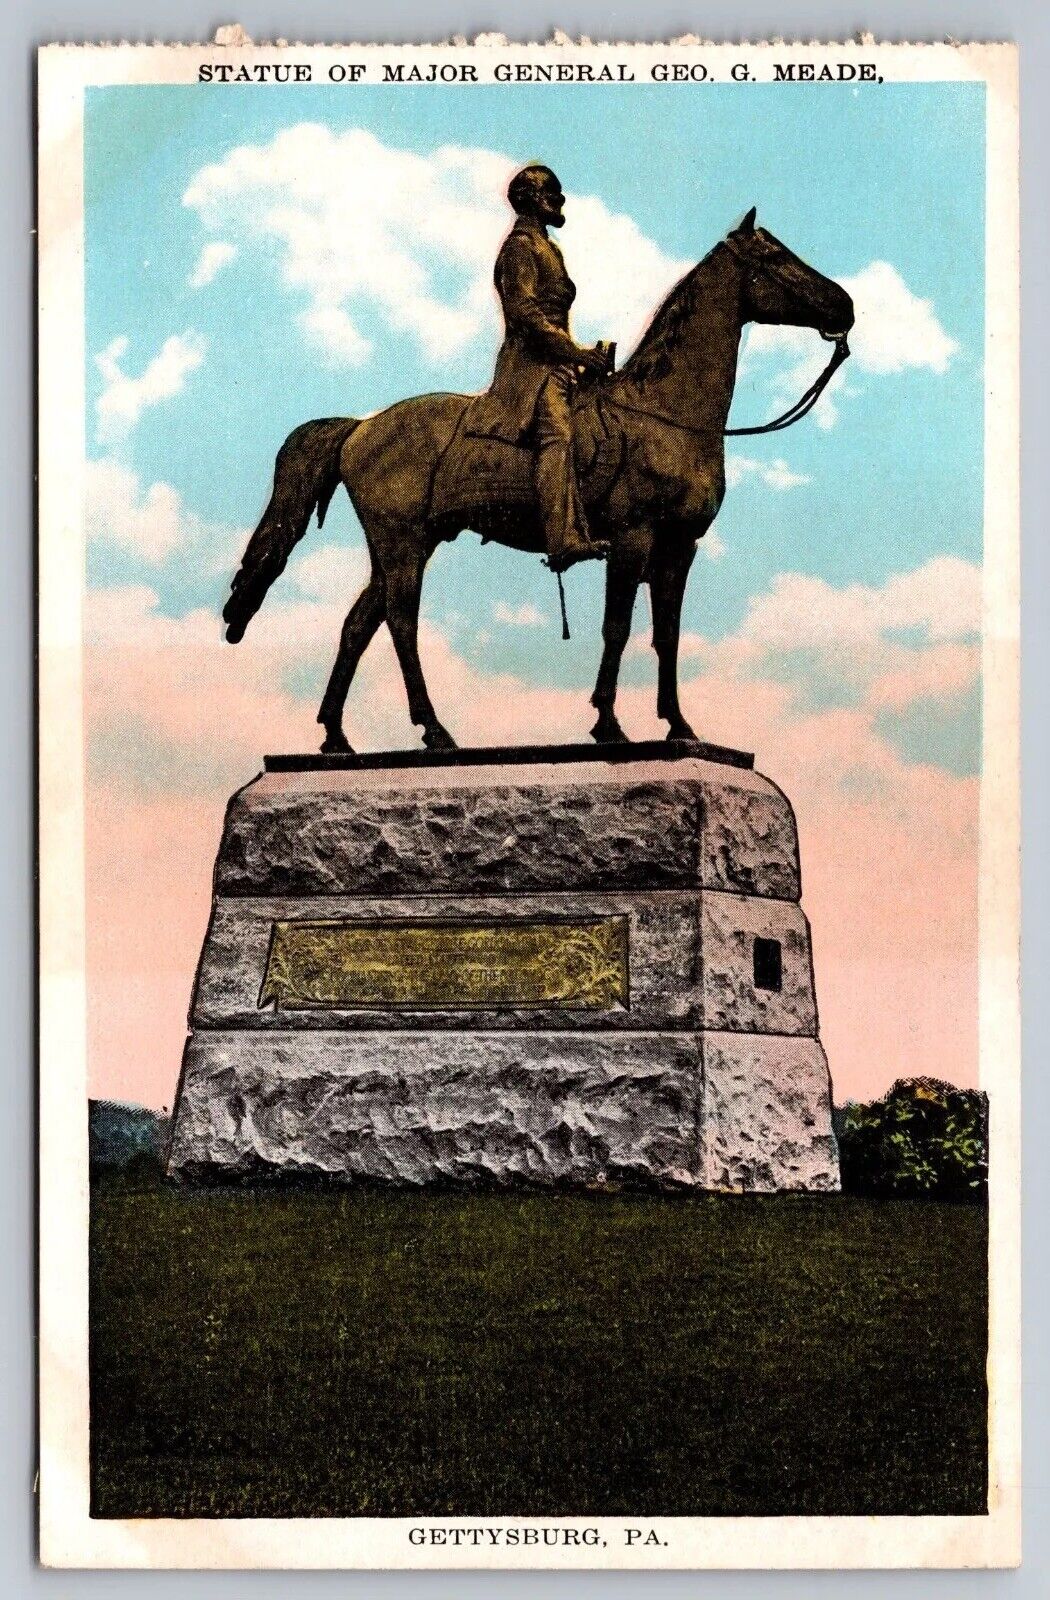 Major General, George Meade Statue Gettysburg, Pennsylvania Vintage Postcard. PA